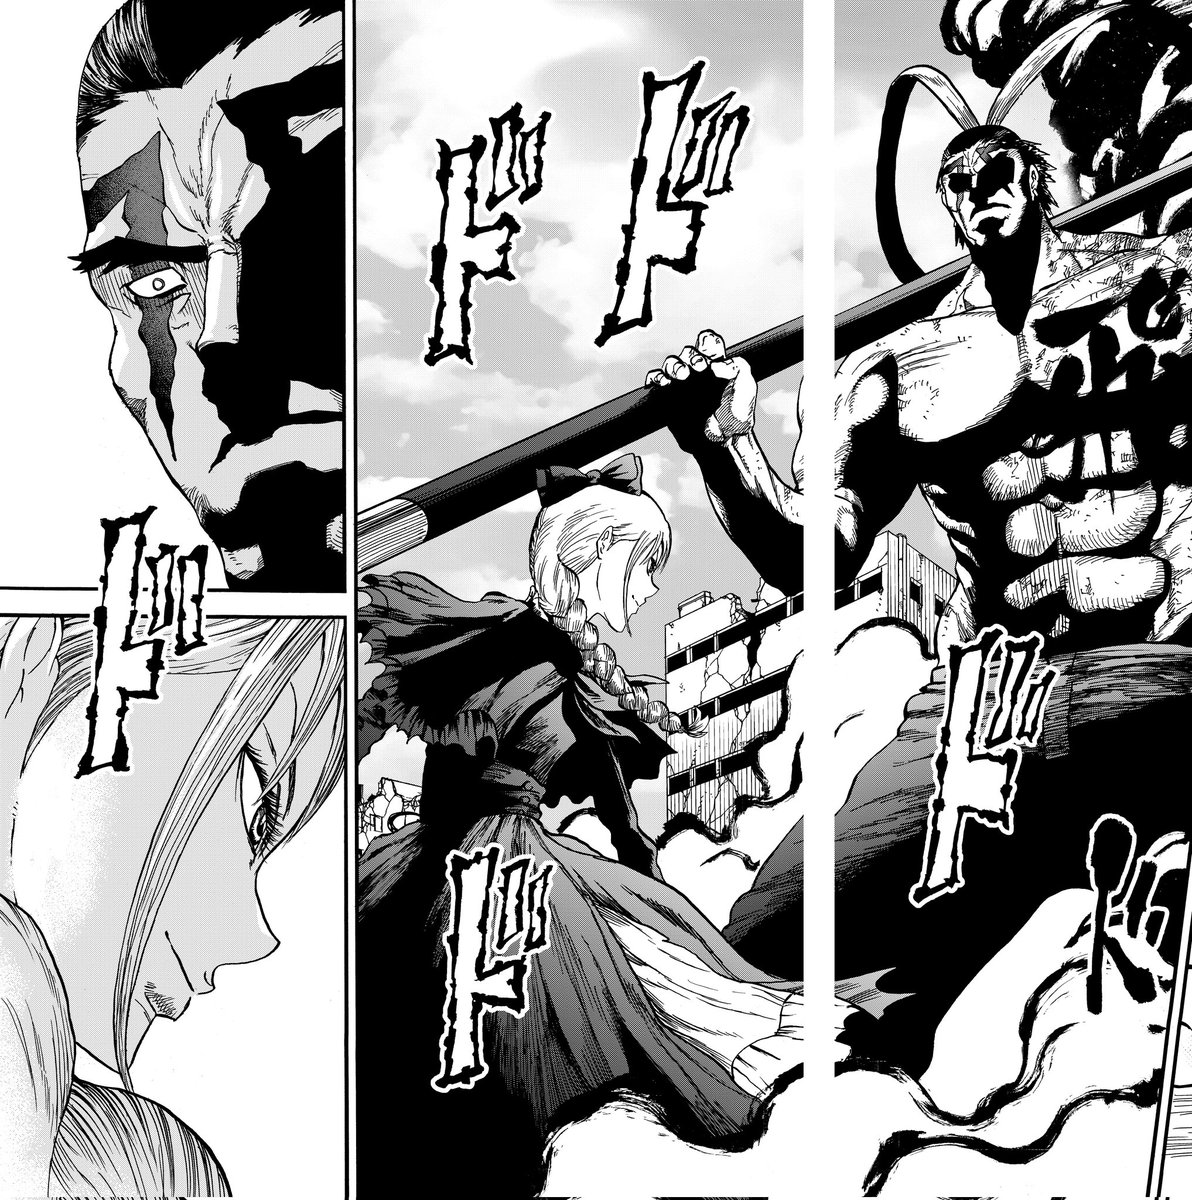 ドドドドド…  『兇人大戦』は現在公開されている7話までが1巻収録の予定。 ちょうど呂布戦が丸々はいる感じですね。  今週金曜日からは新章、新たな敵の登場です。 お楽しみに。  『兇人大戦』はマンガTOPで連載中。  #マンガTOP #マンガ #漫画 #manga #兇人大戦